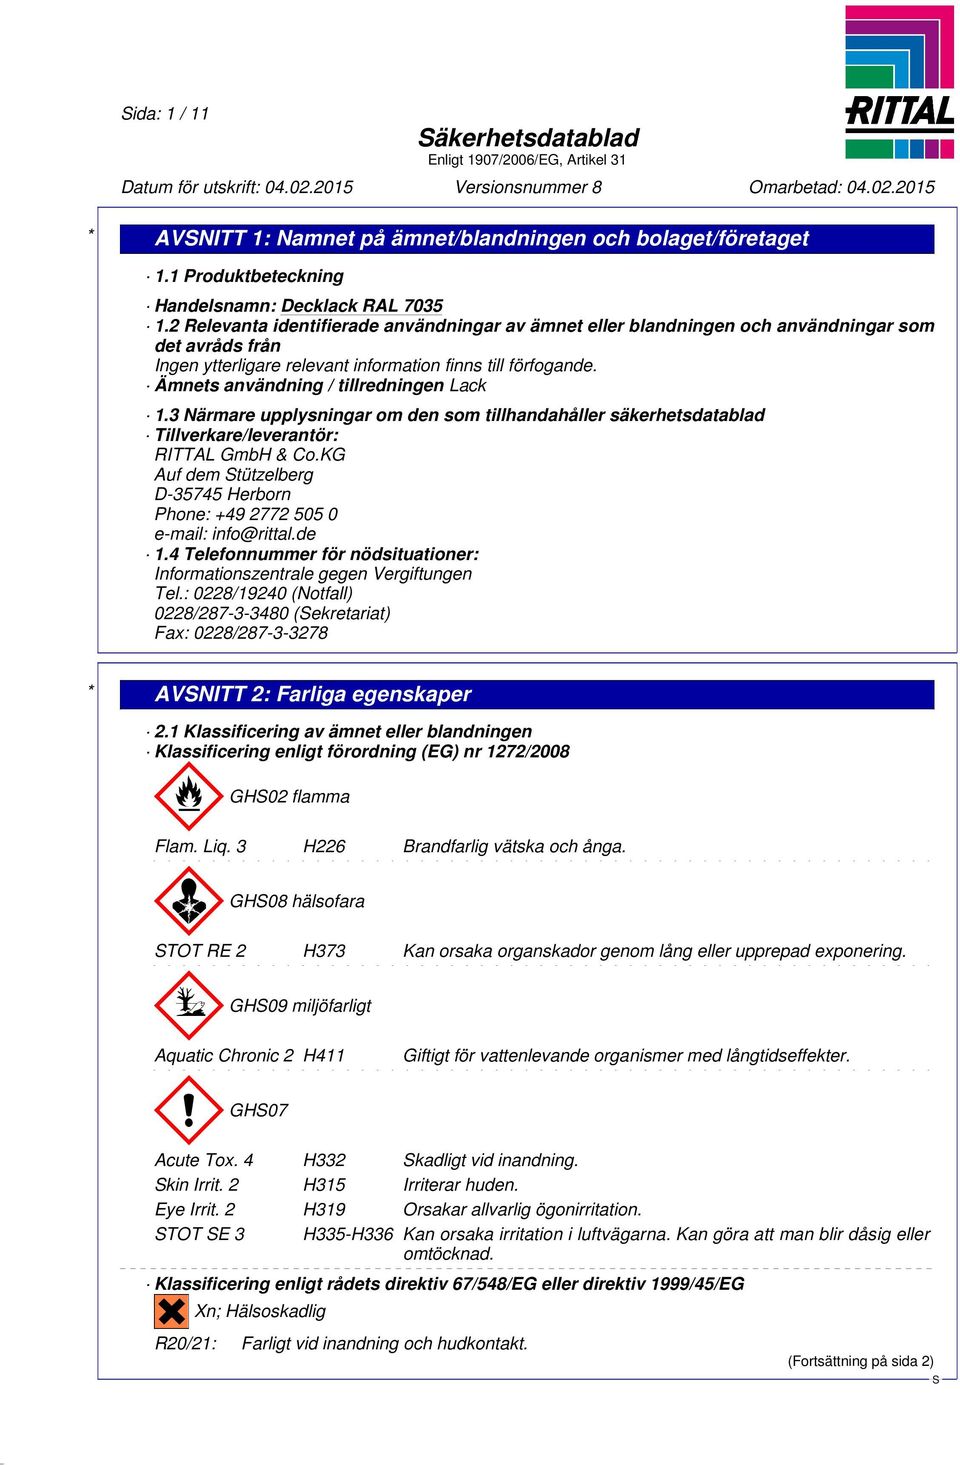 Ämnets användning / tillredningen Lack 1.3 Närmare upplysningar om den som tillhandahåller säkerhetsdatablad Tillverkare/leverantör: RITTAL GmbH & Co.